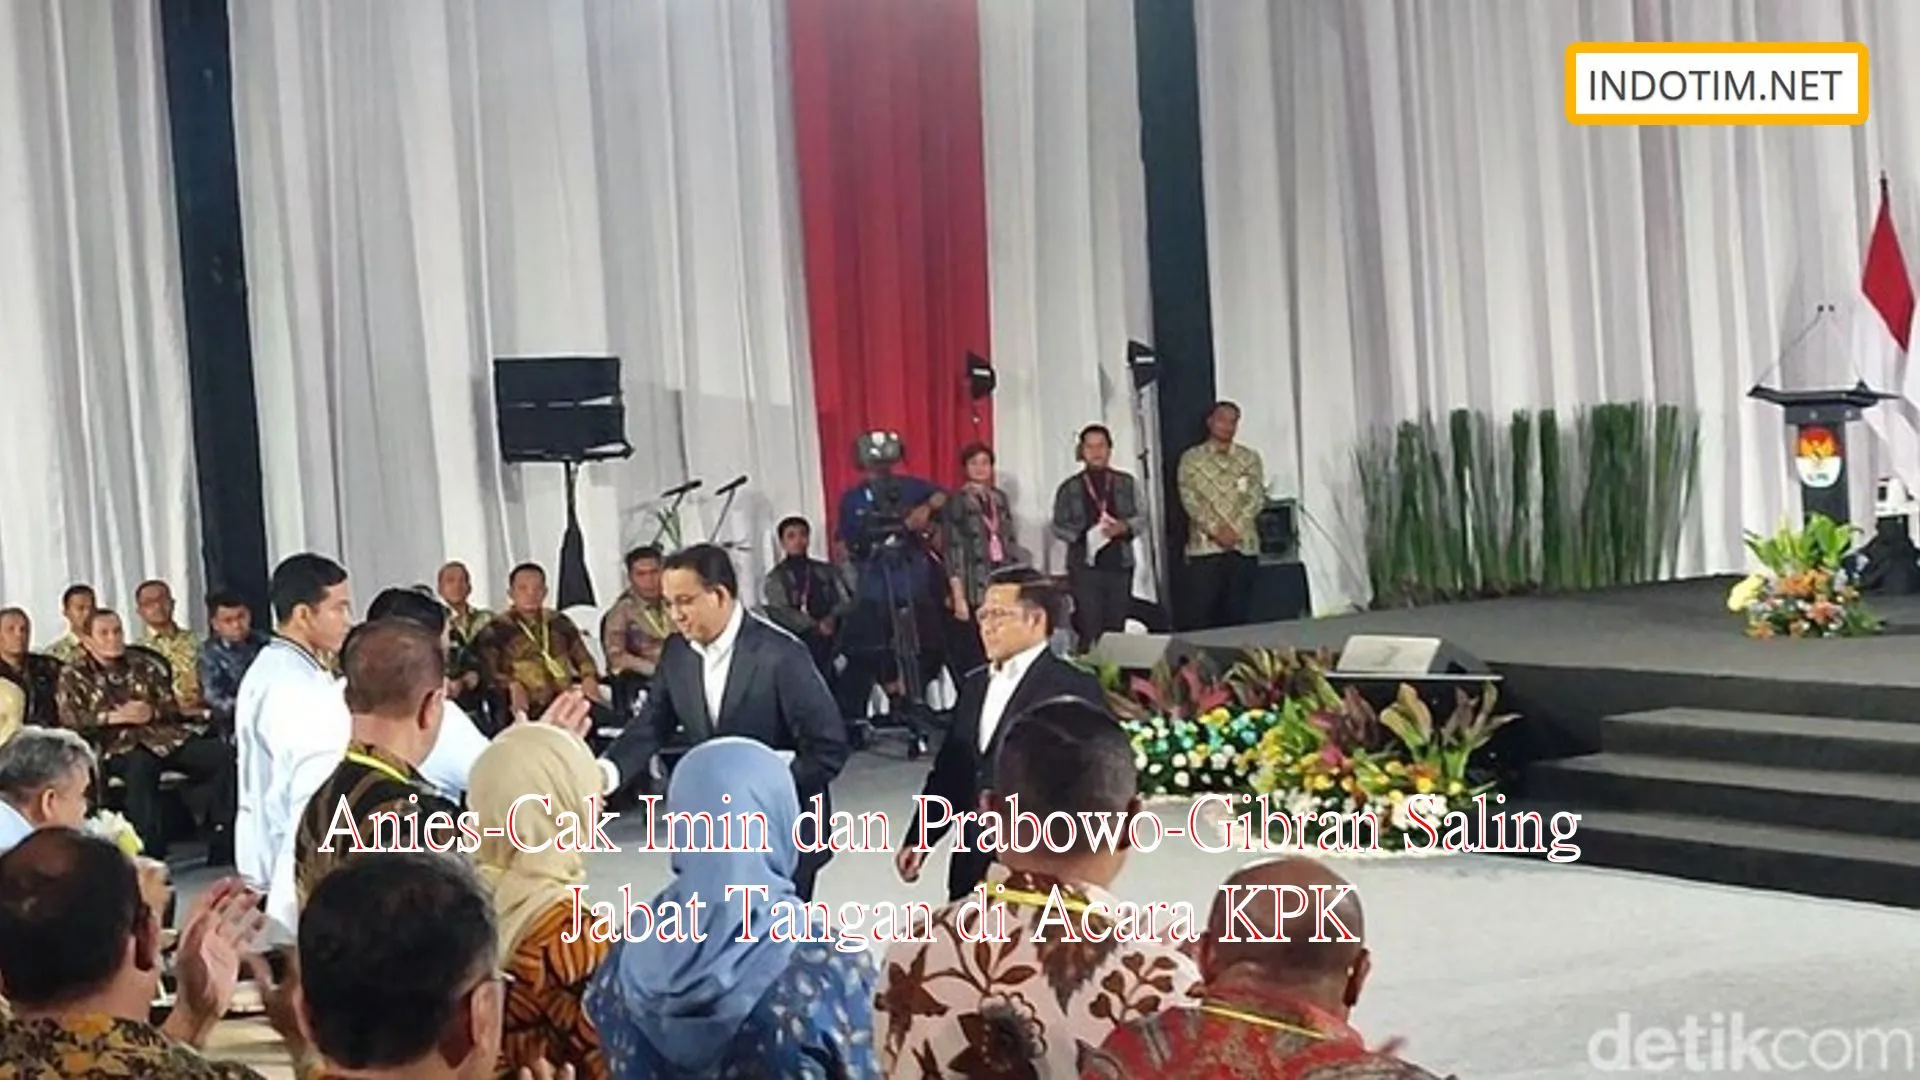 Anies-Cak Imin dan Prabowo-Gibran Saling Jabat Tangan di Acara KPK